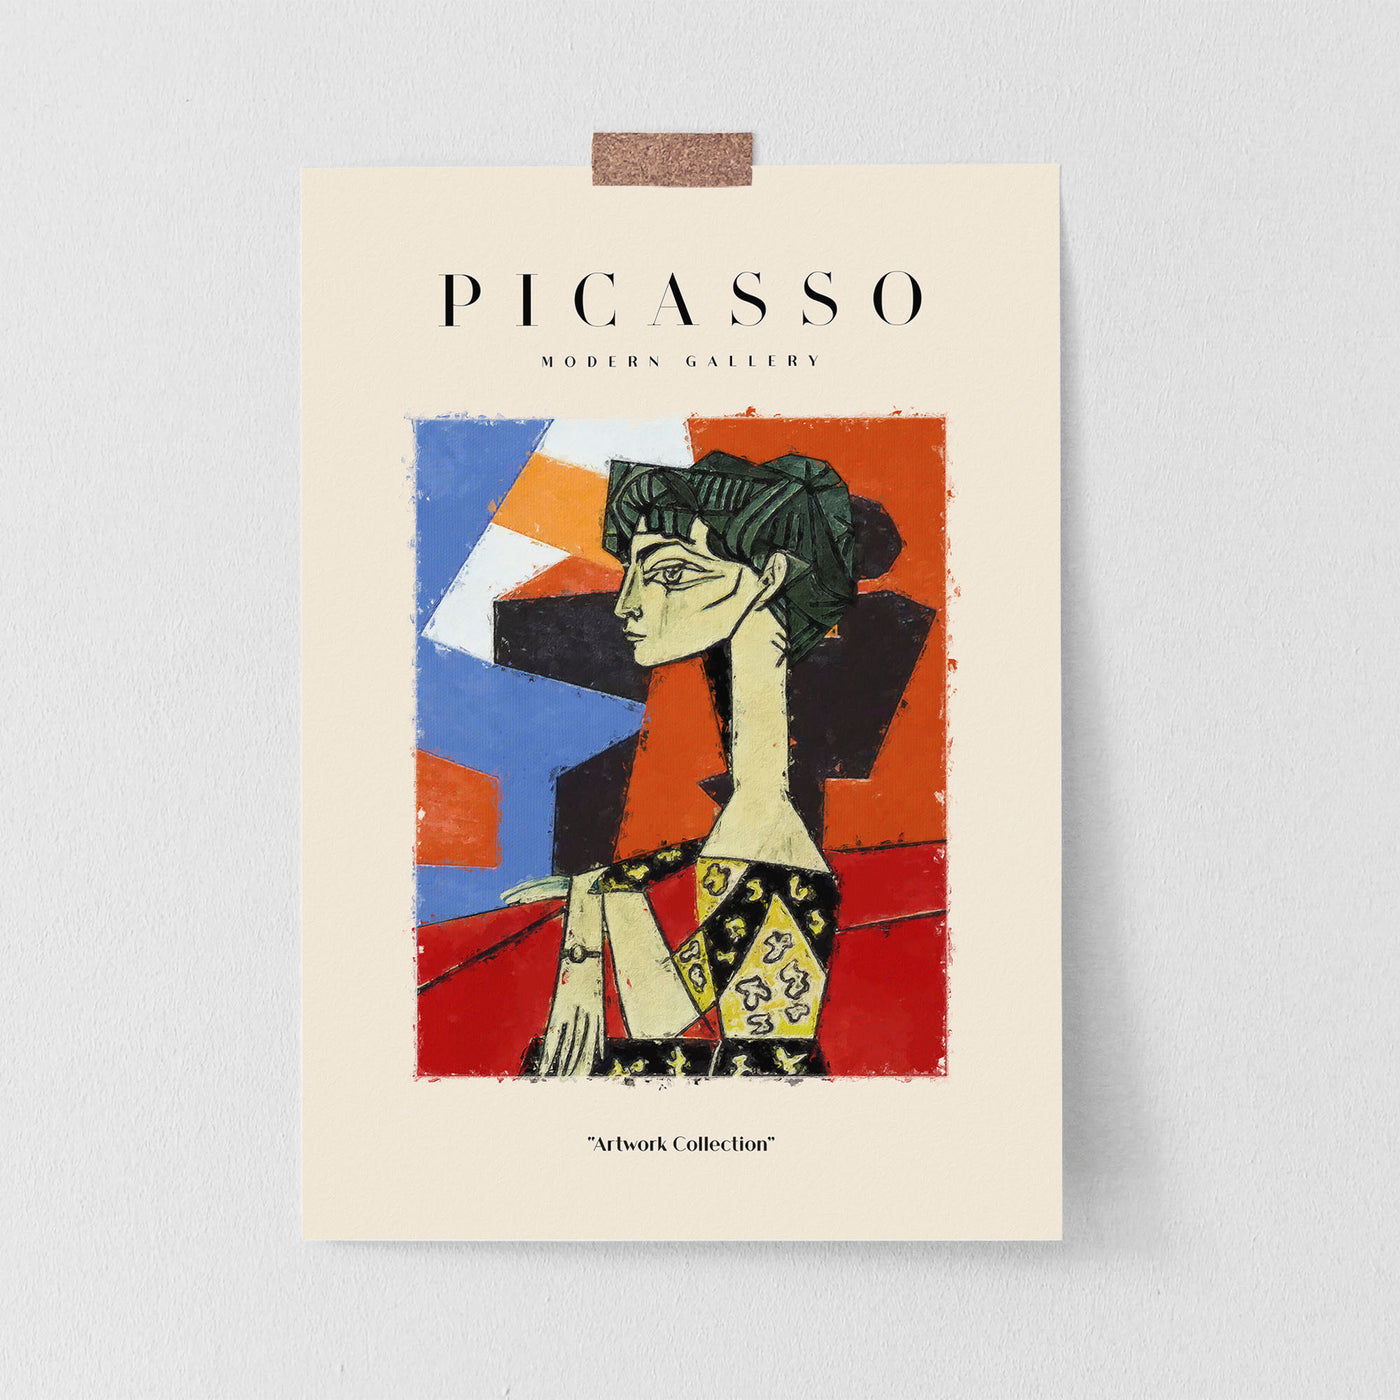 Pablo Picasso - #24